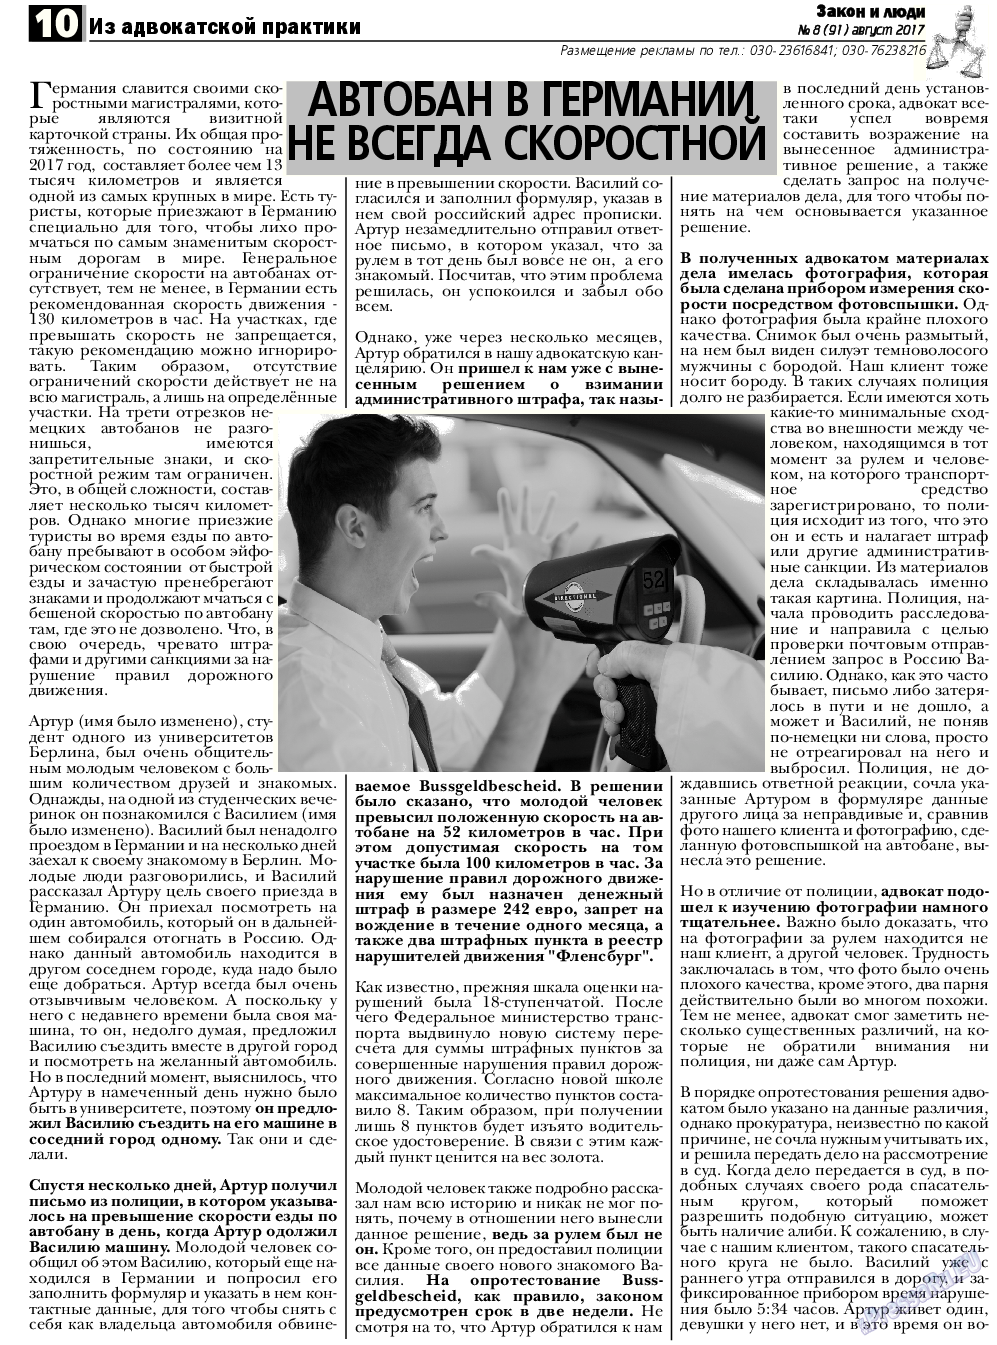 Закон и люди, газета. 2017 №8 стр.10